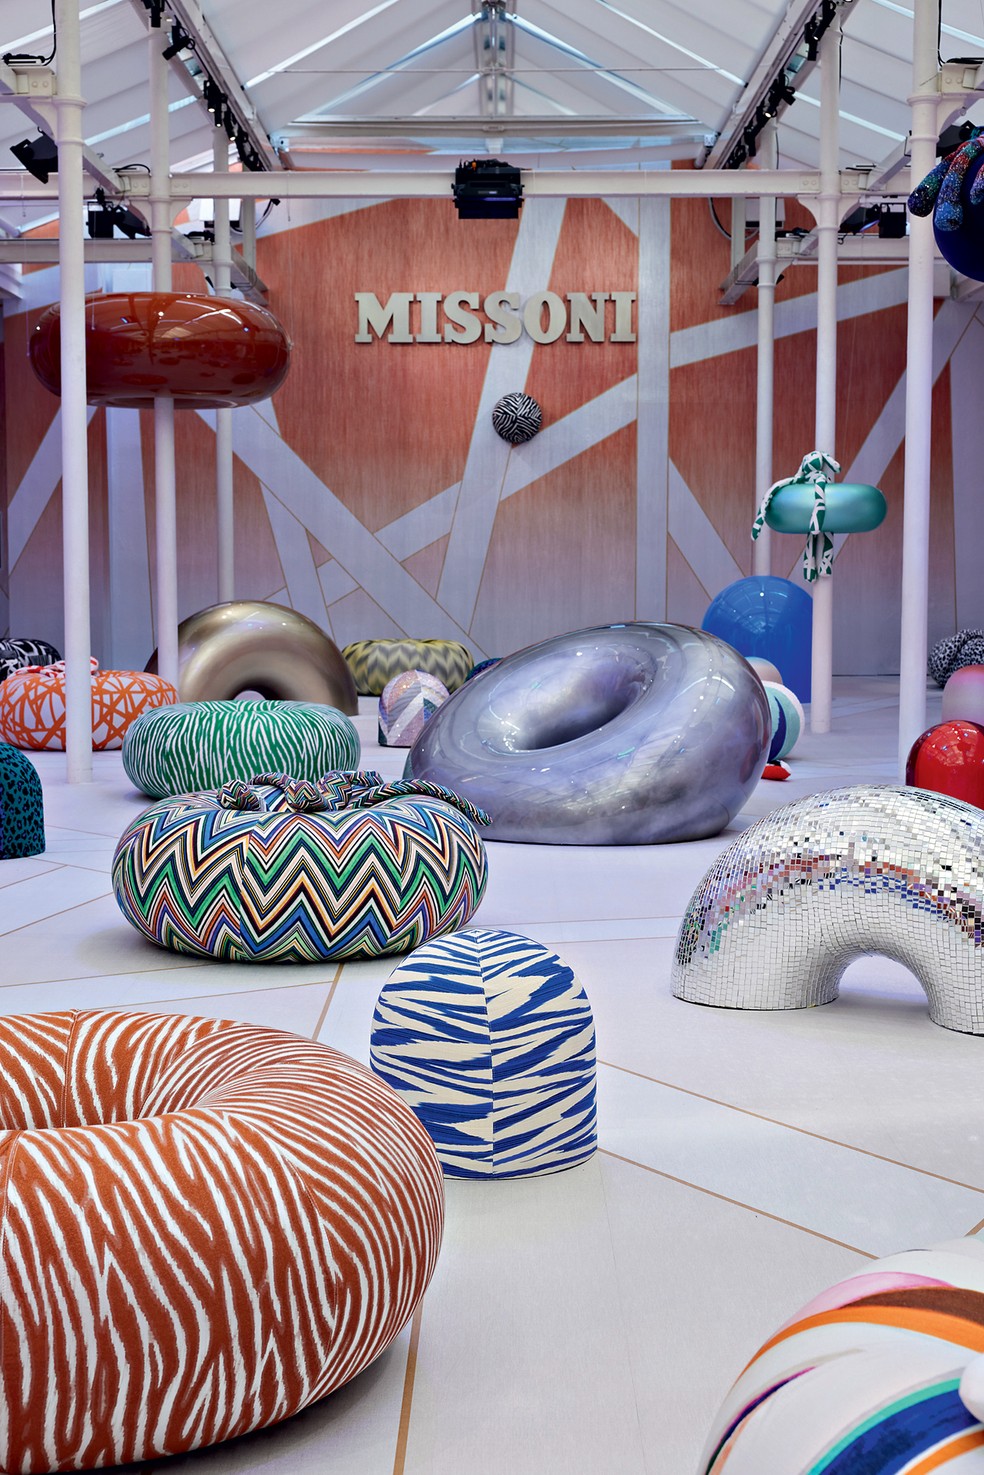 Instalação Missoni com pufes em forma de donuts — Foto: Missoni / Divulgação